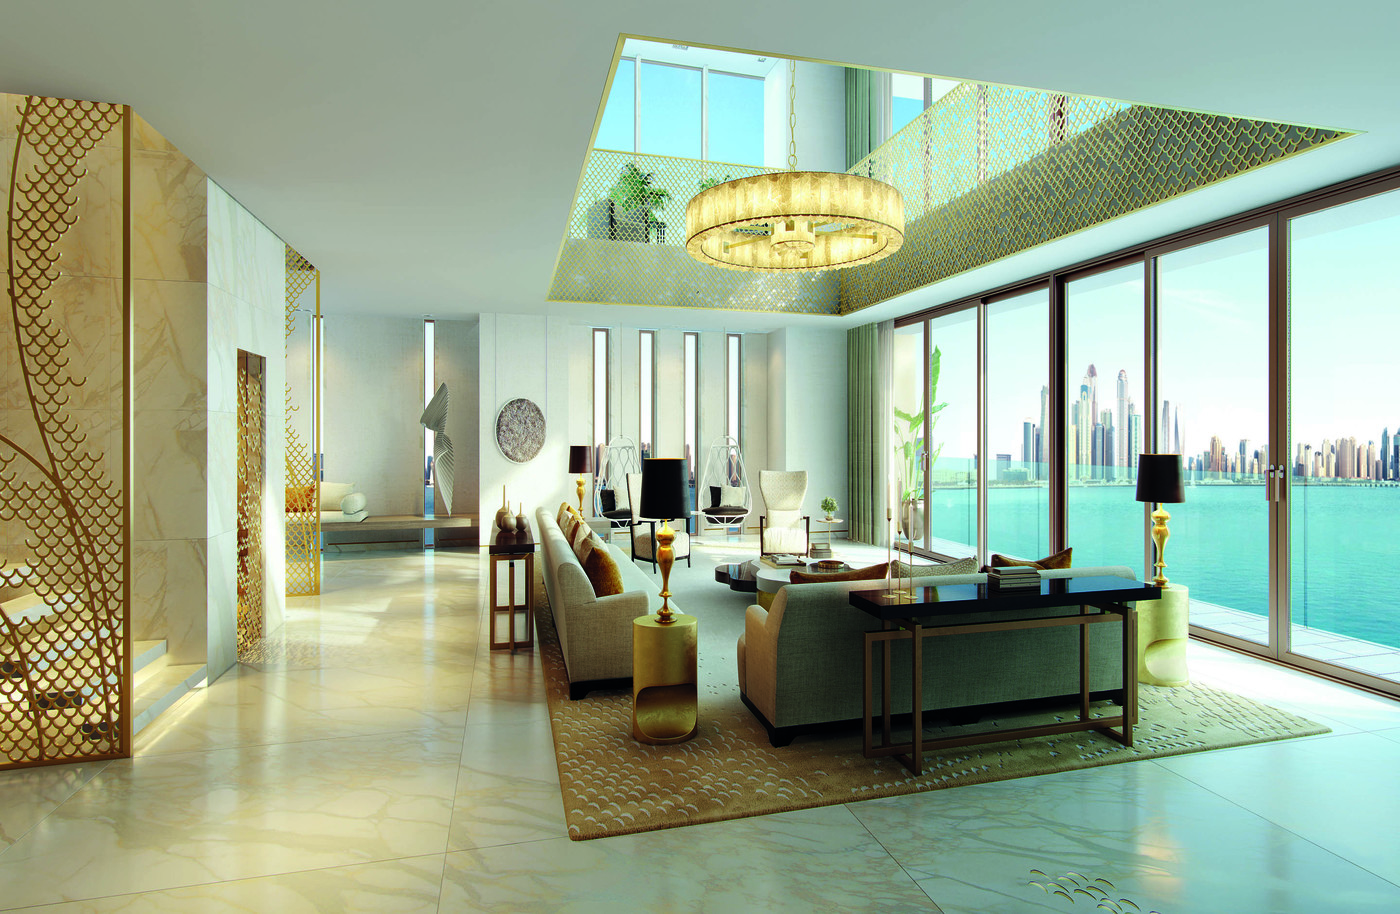 imagen 5 de The Royal Atlantis Resort & Residences, un nuevo edificio de lujo y escándalo en Dubai.